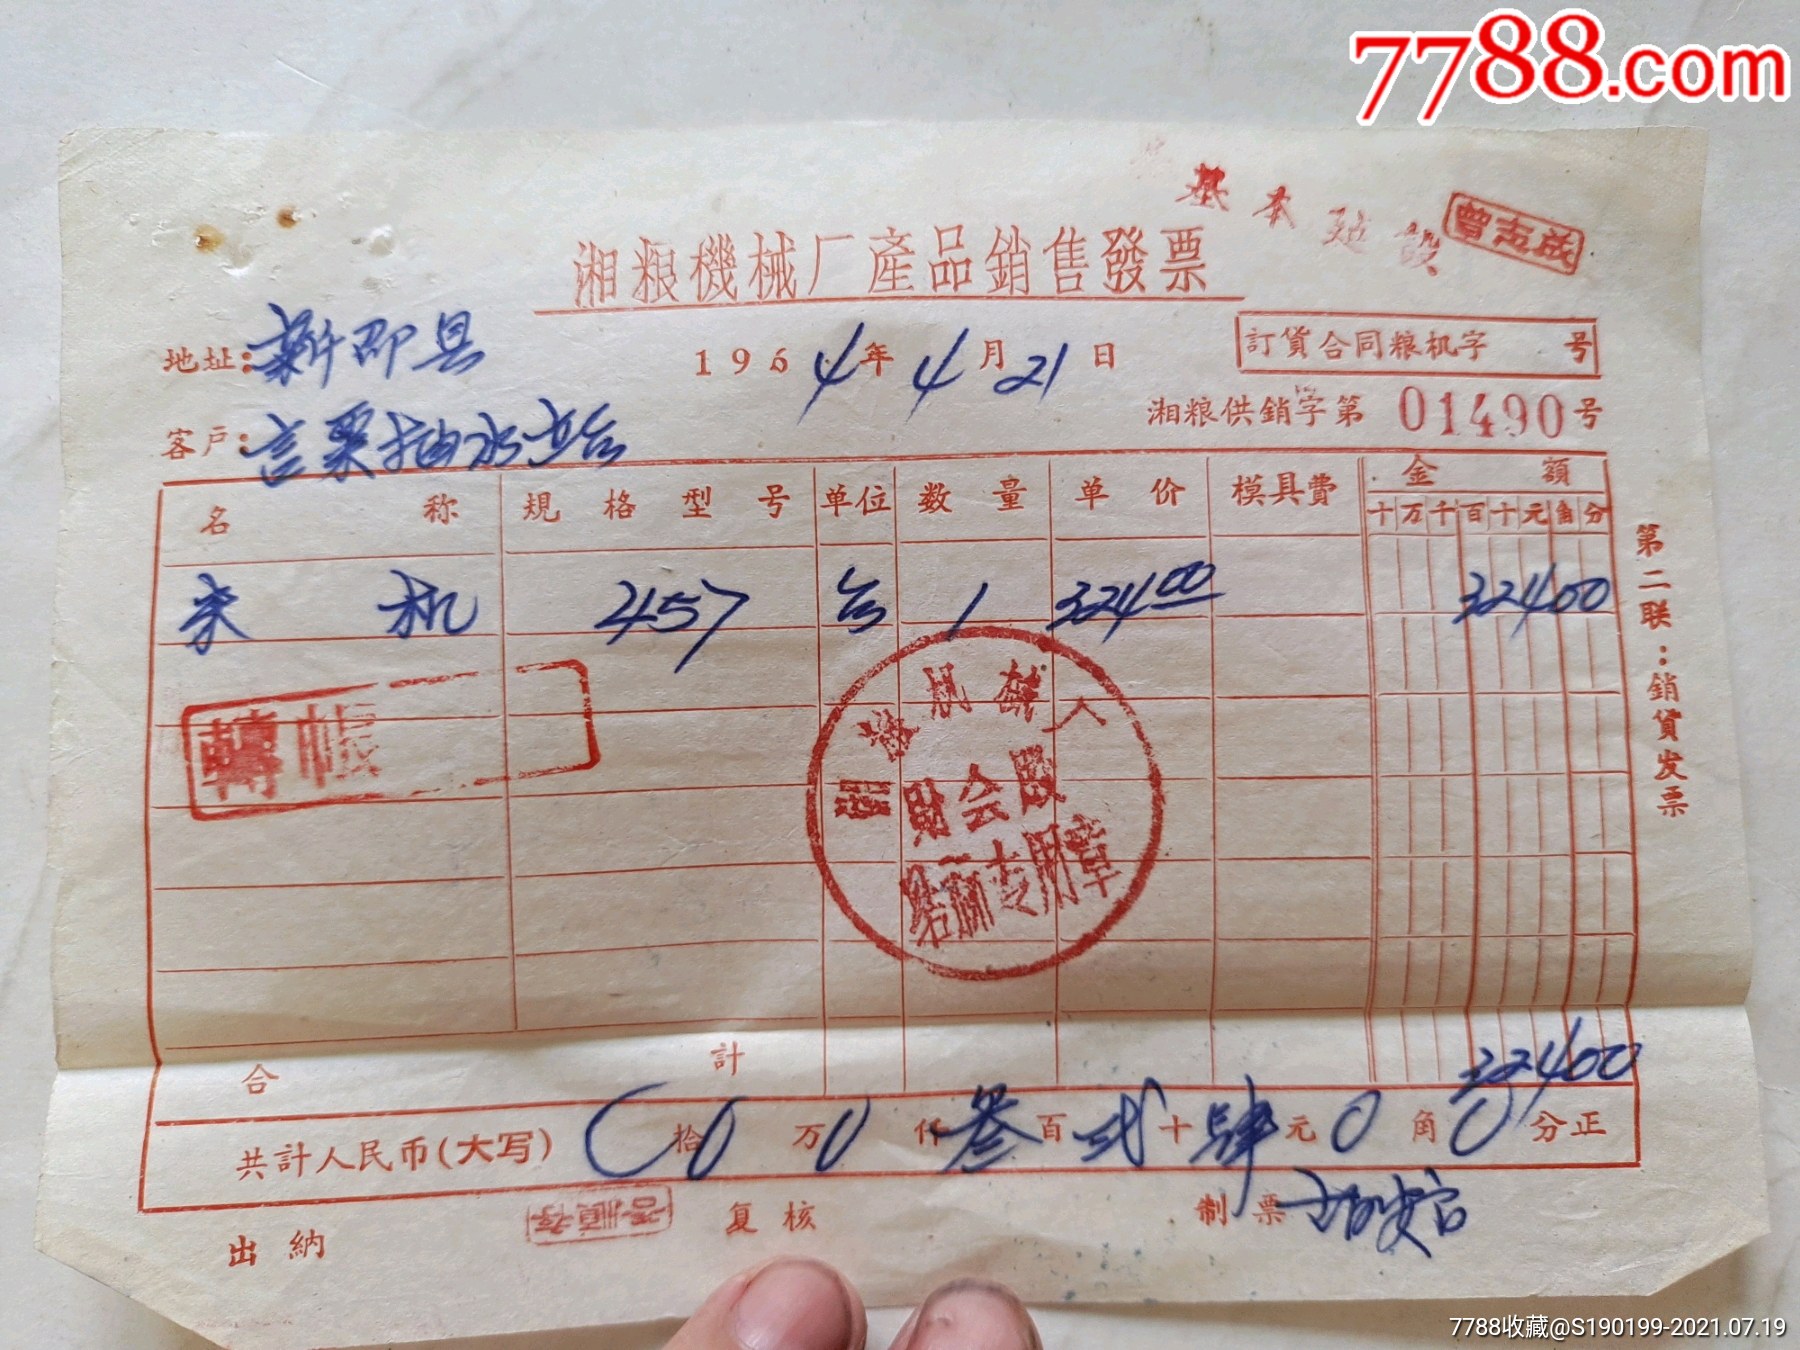 湘粮机械厂产品销售发票(457米机)